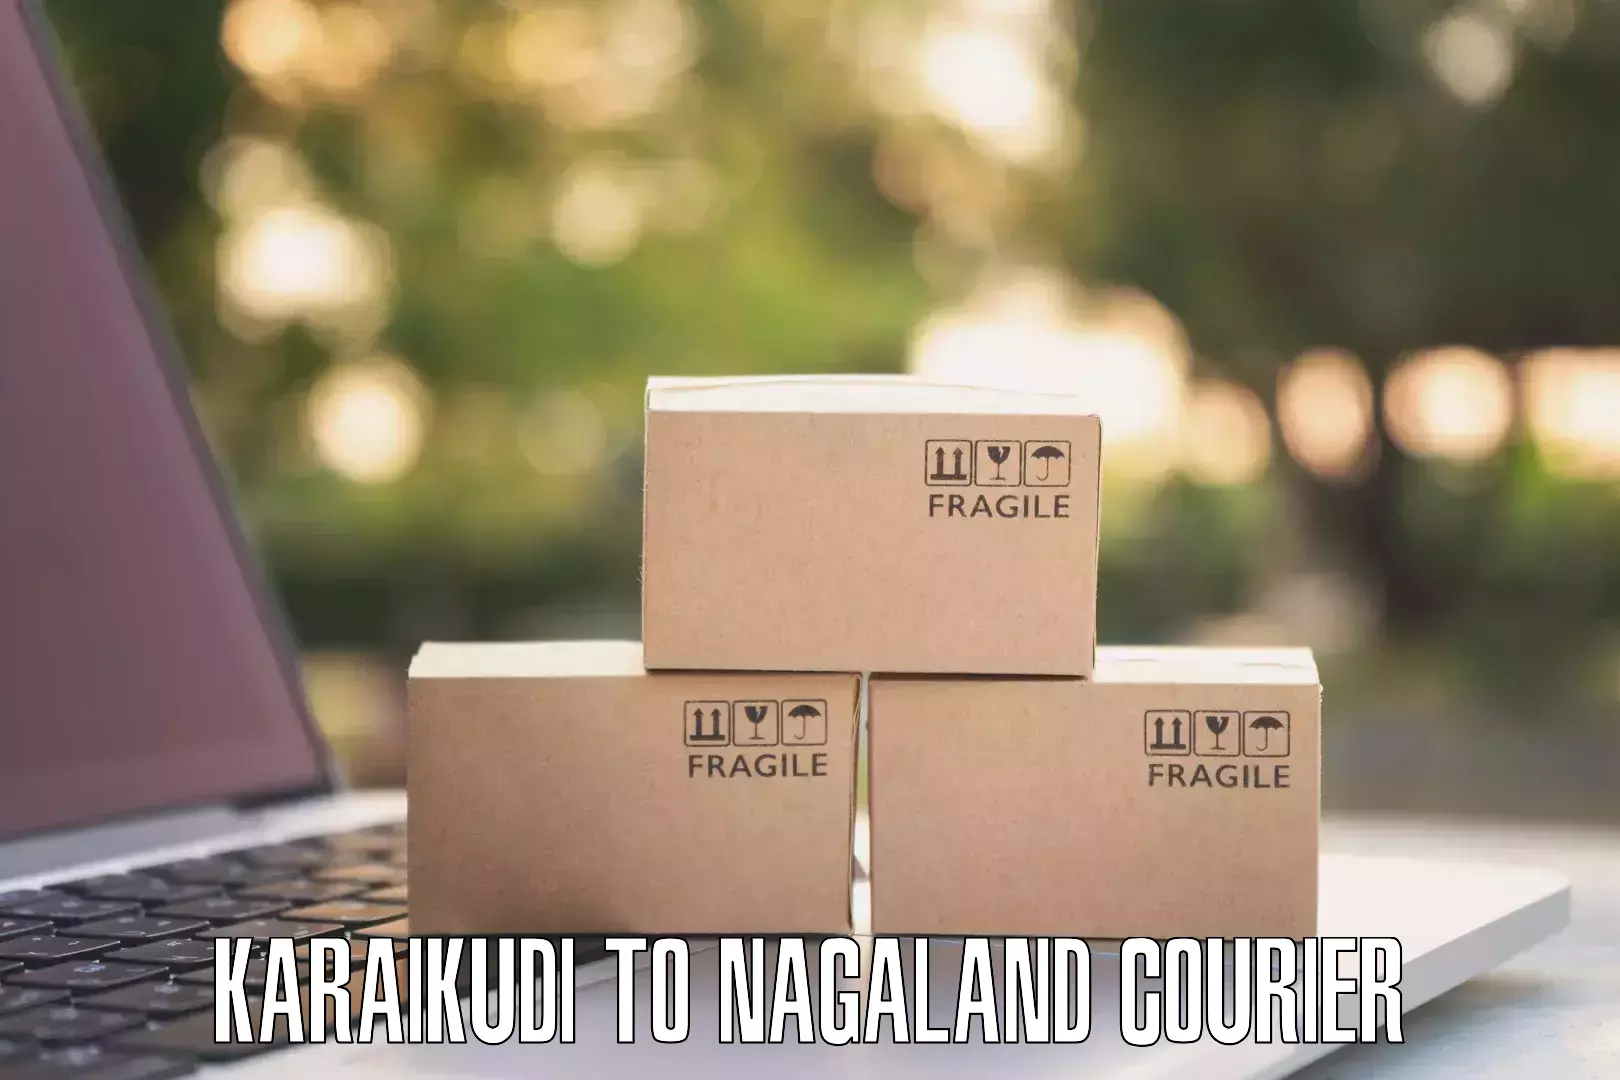 User-friendly delivery service Karaikudi to Phek